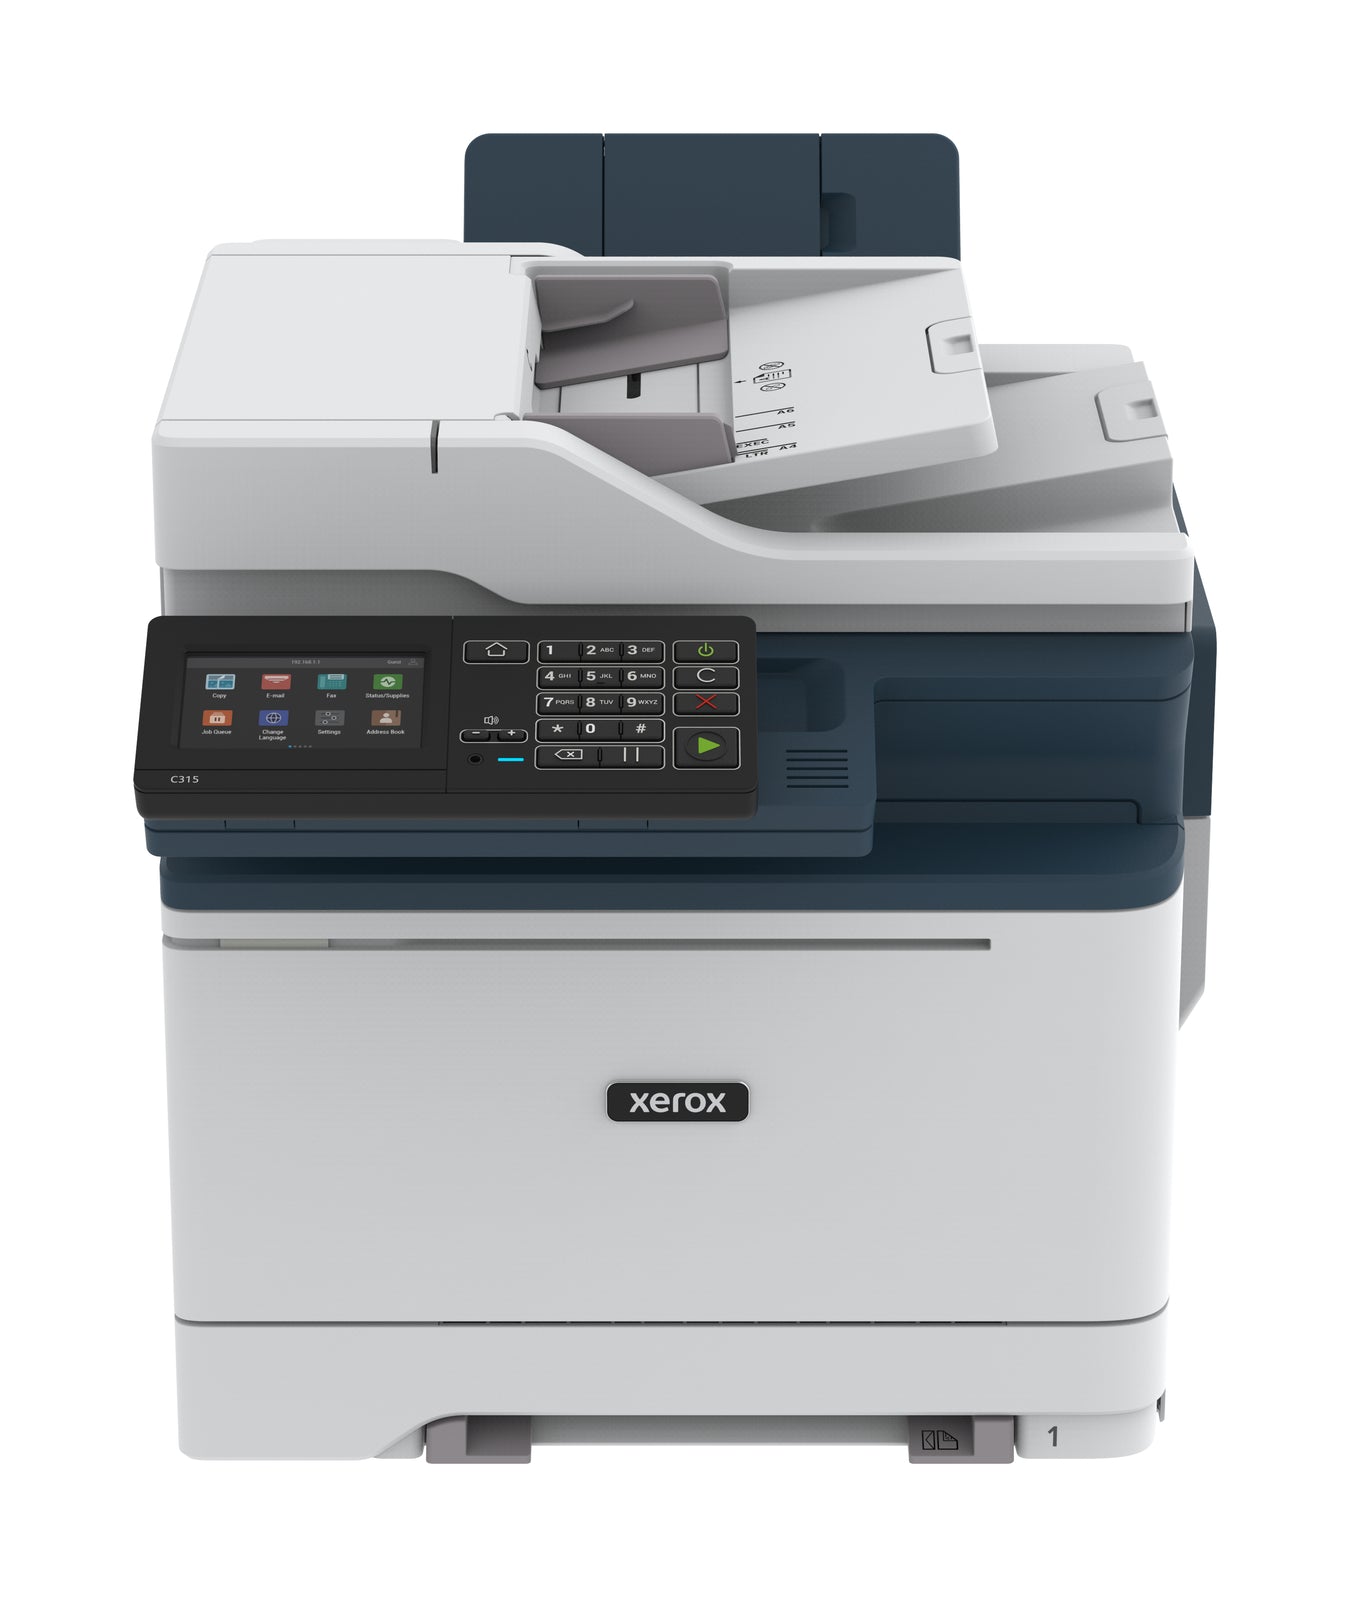 Xerox Printer Image sold by Inks N Stuff